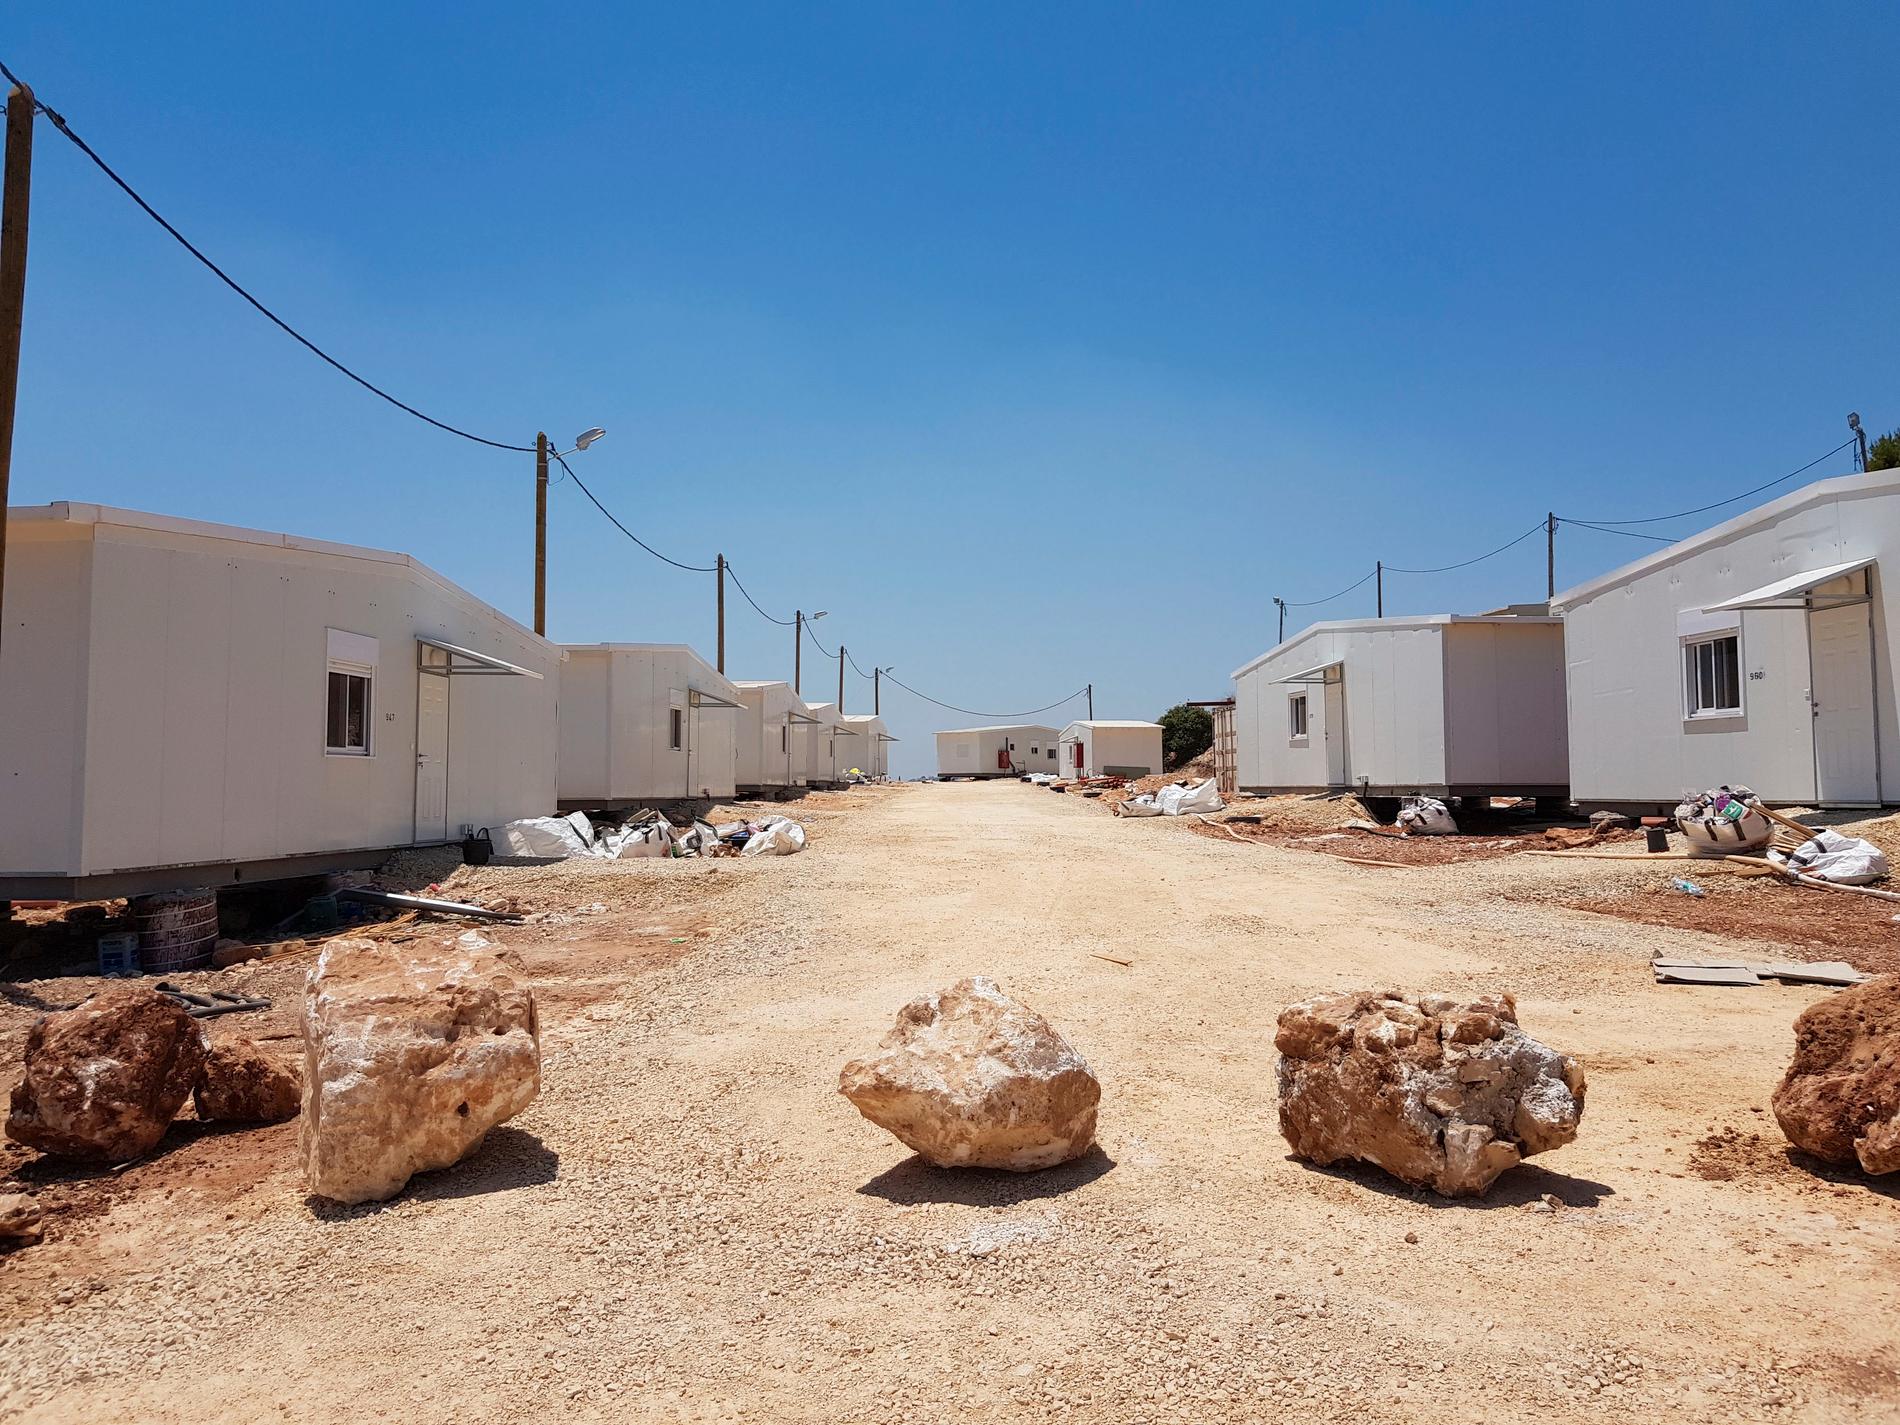 En ny israelisk bosättning, Neve Achi, på Västbanken. Arkivfoto.